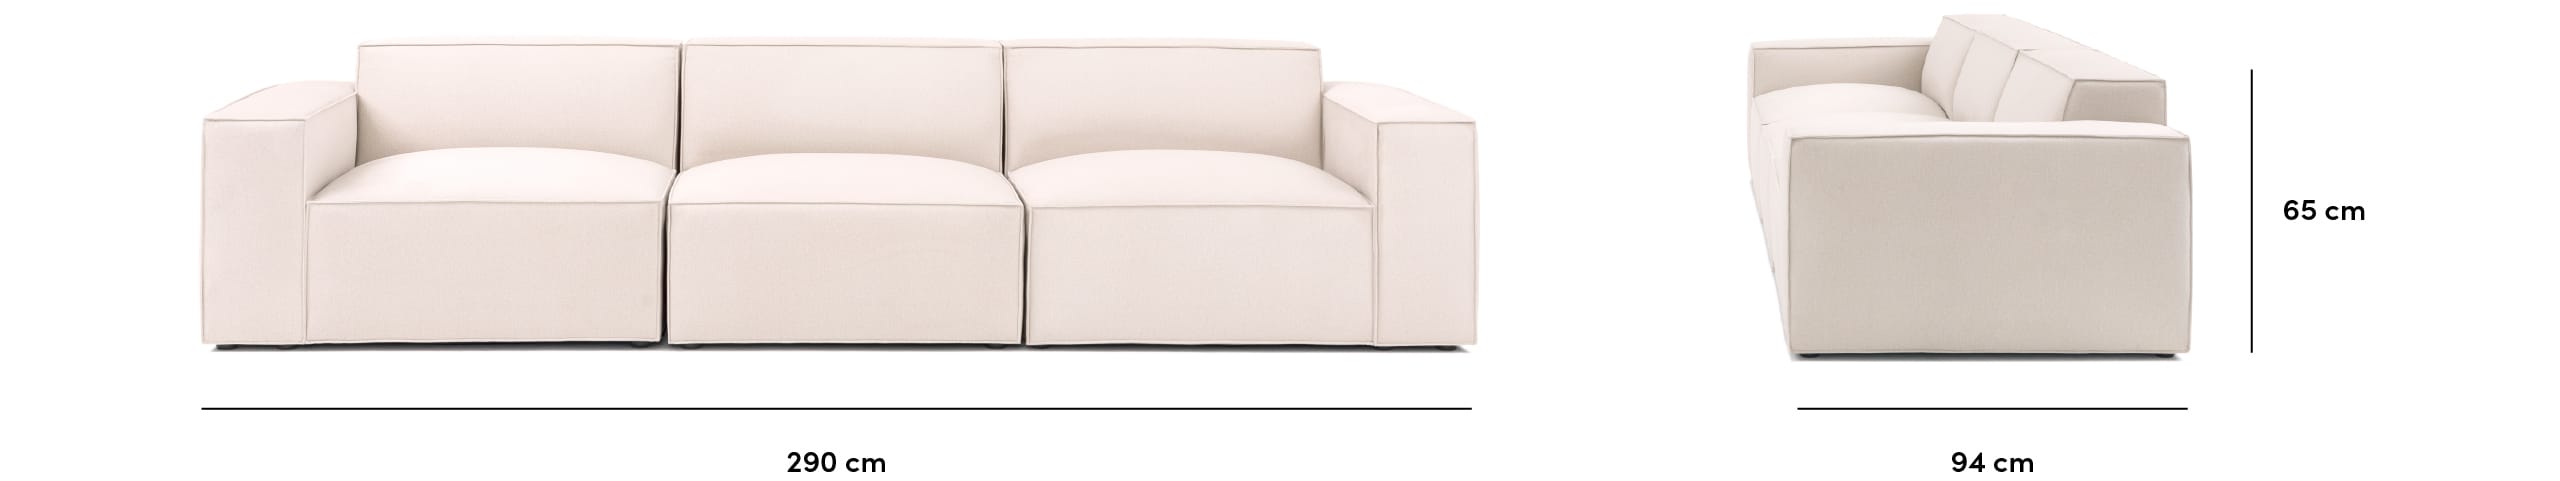 Pacific sofa dimensions